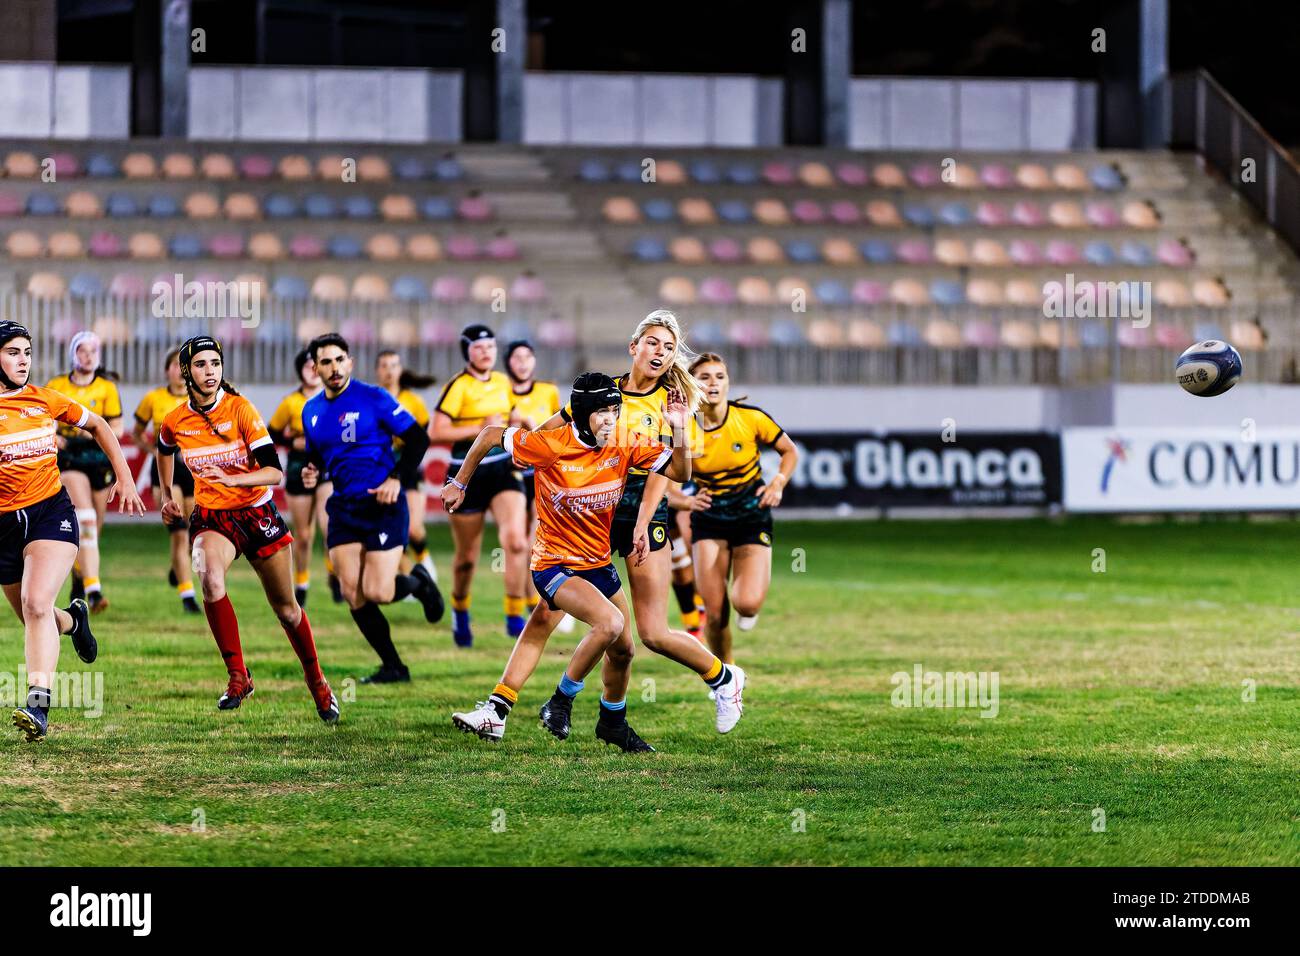 Les femmes courent vers le ballon de rugby Banque D'Images